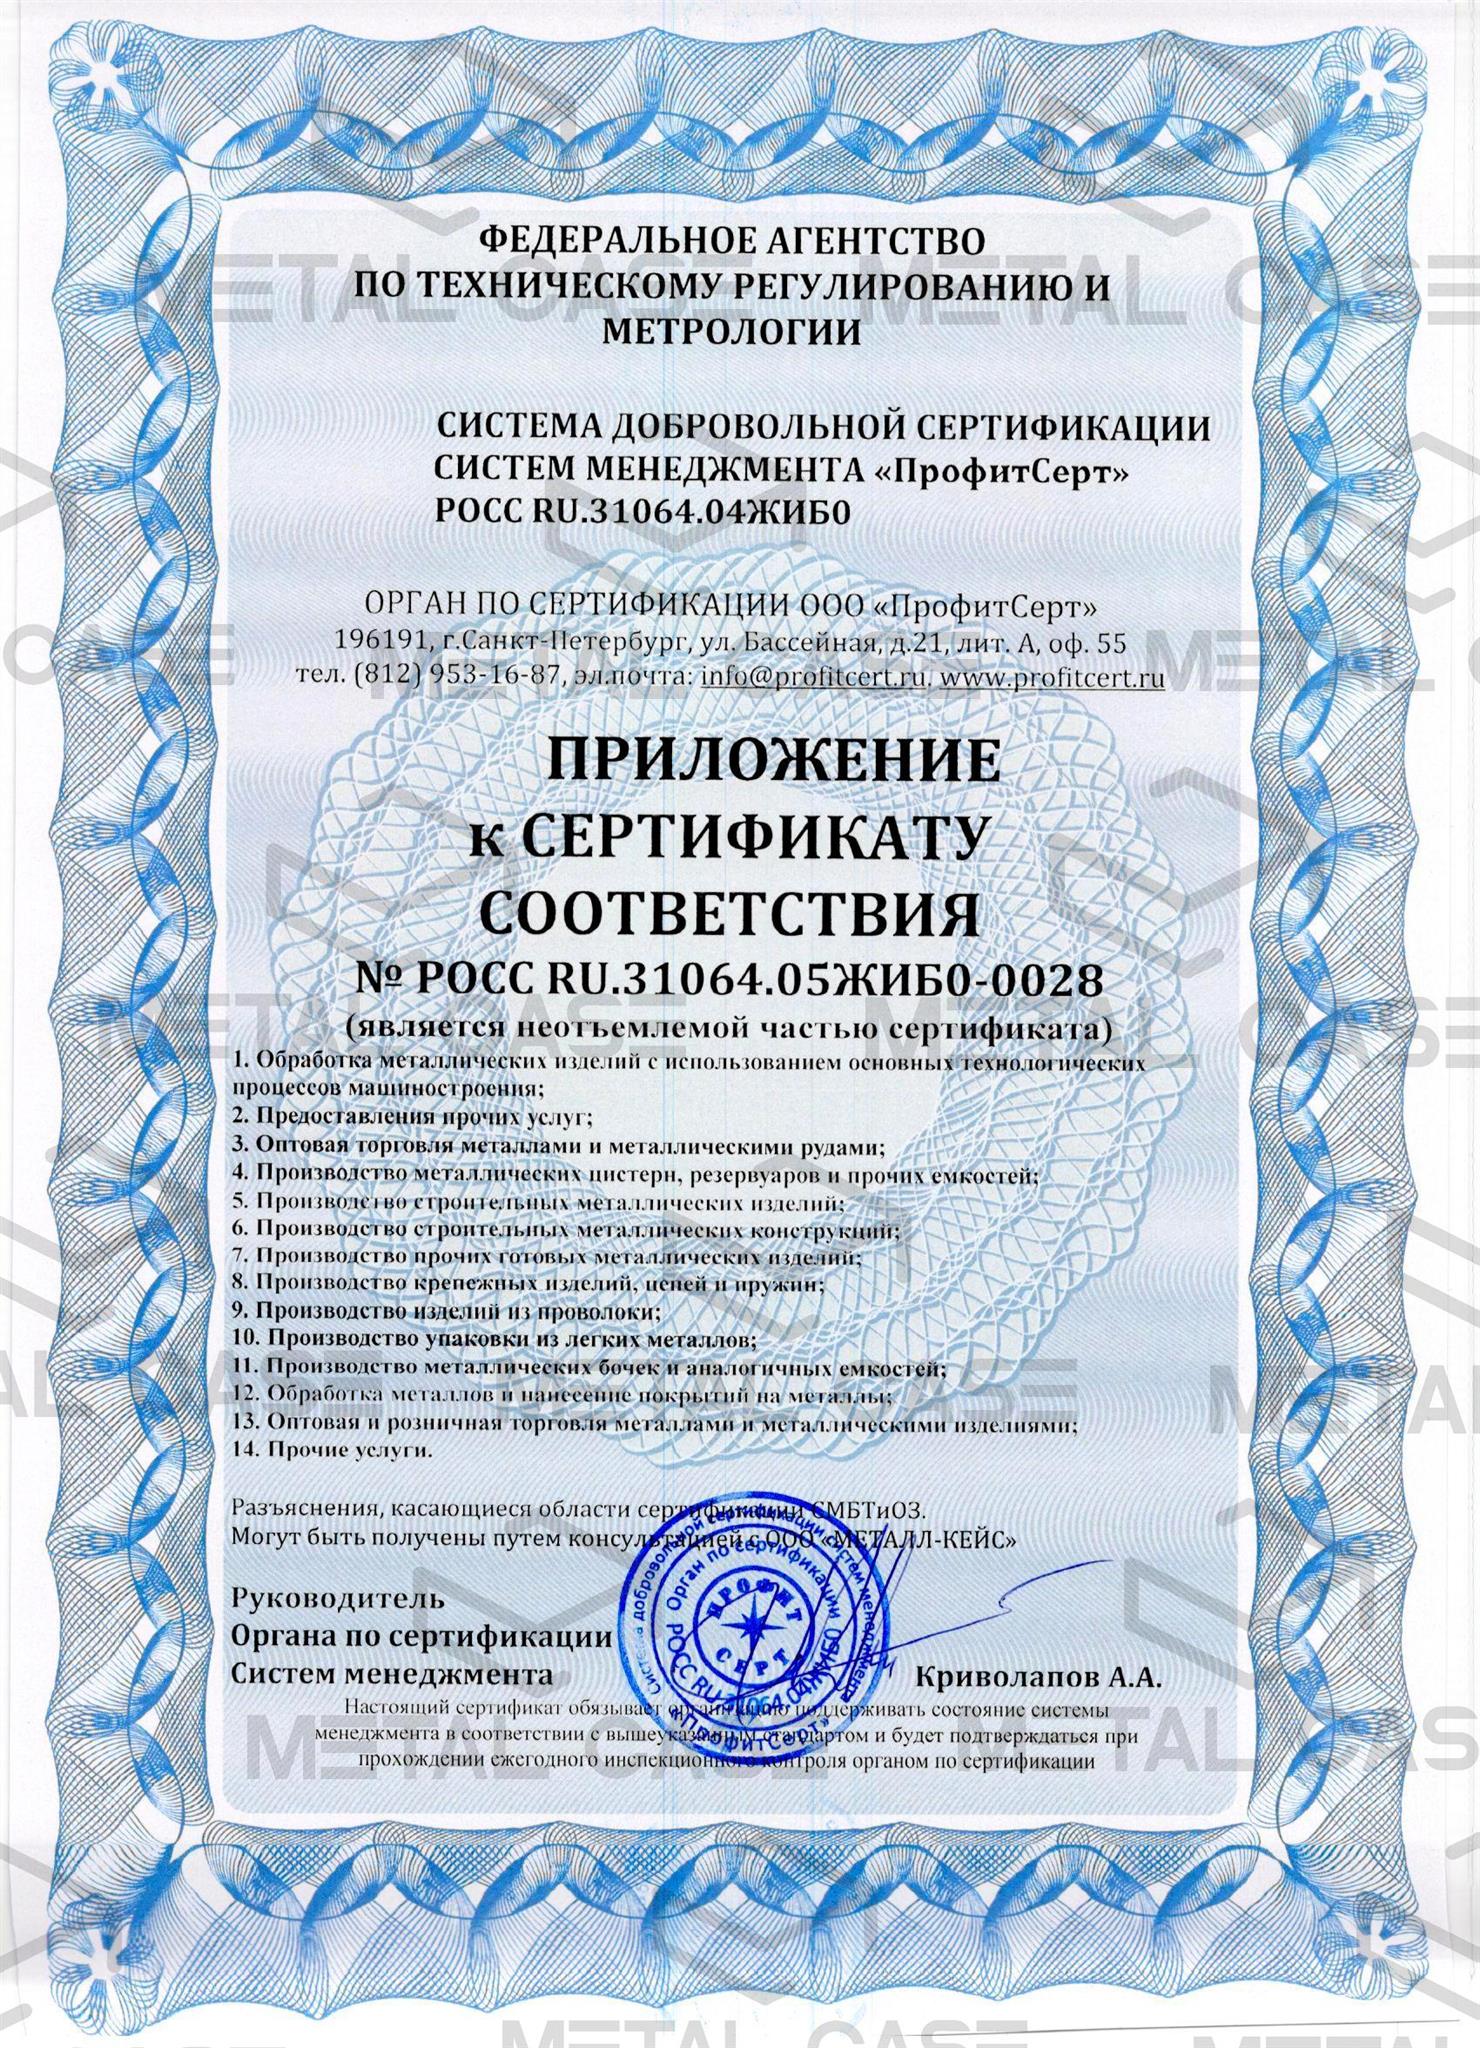 Приложение к сертификату OHSAS 18001 компании "Металл-Кейс"